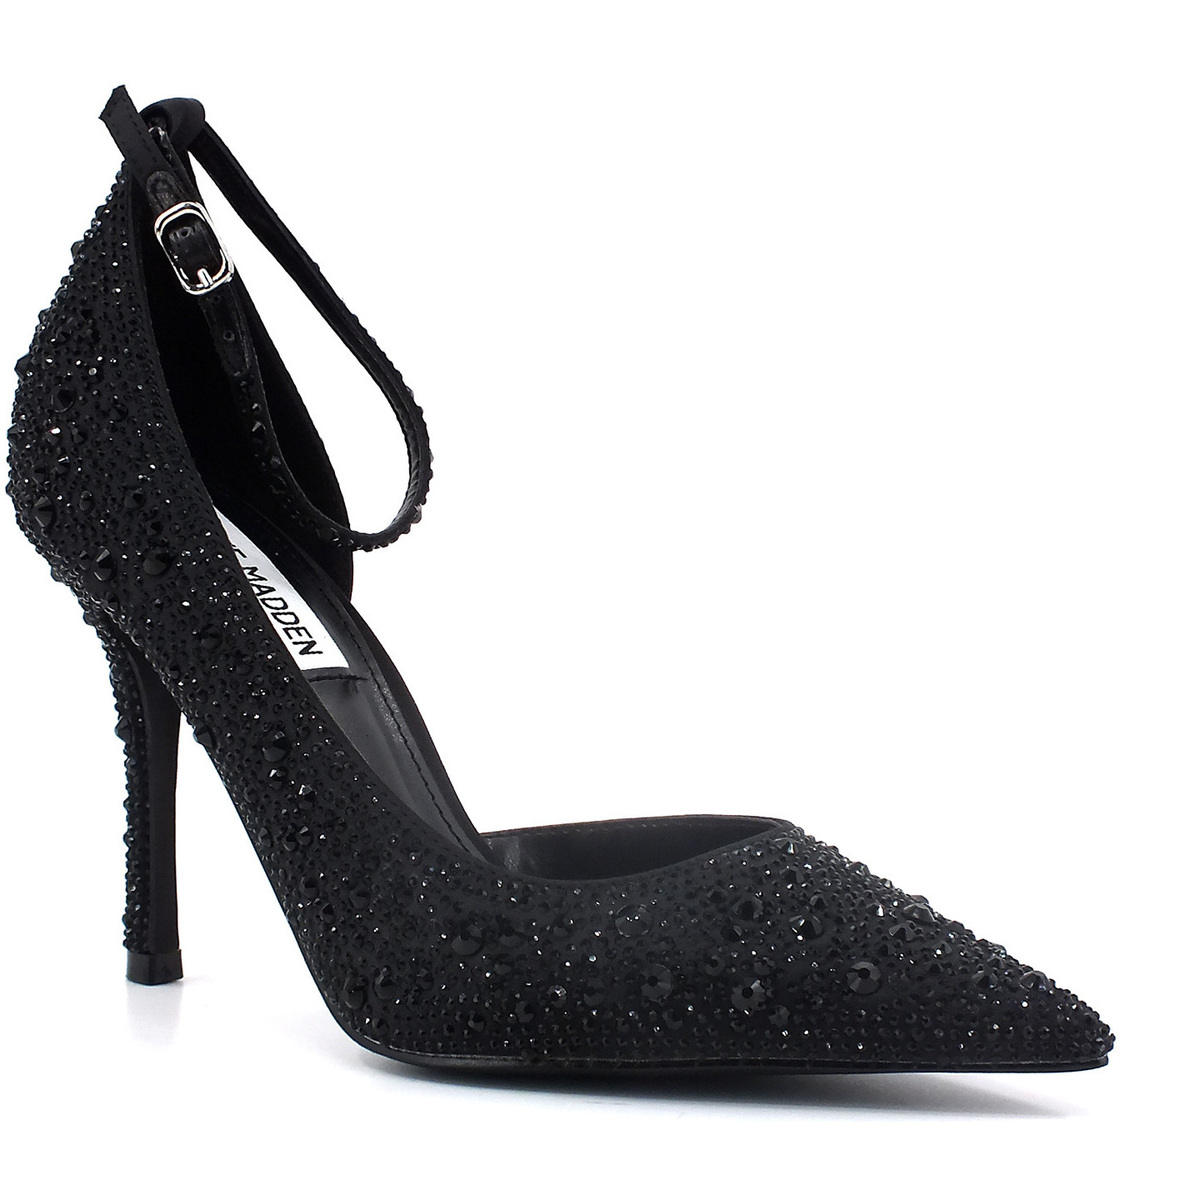 Chaussures Femme Bottes Steve Madden Fresco Décolléte Donna Black FRES06S1 Noir